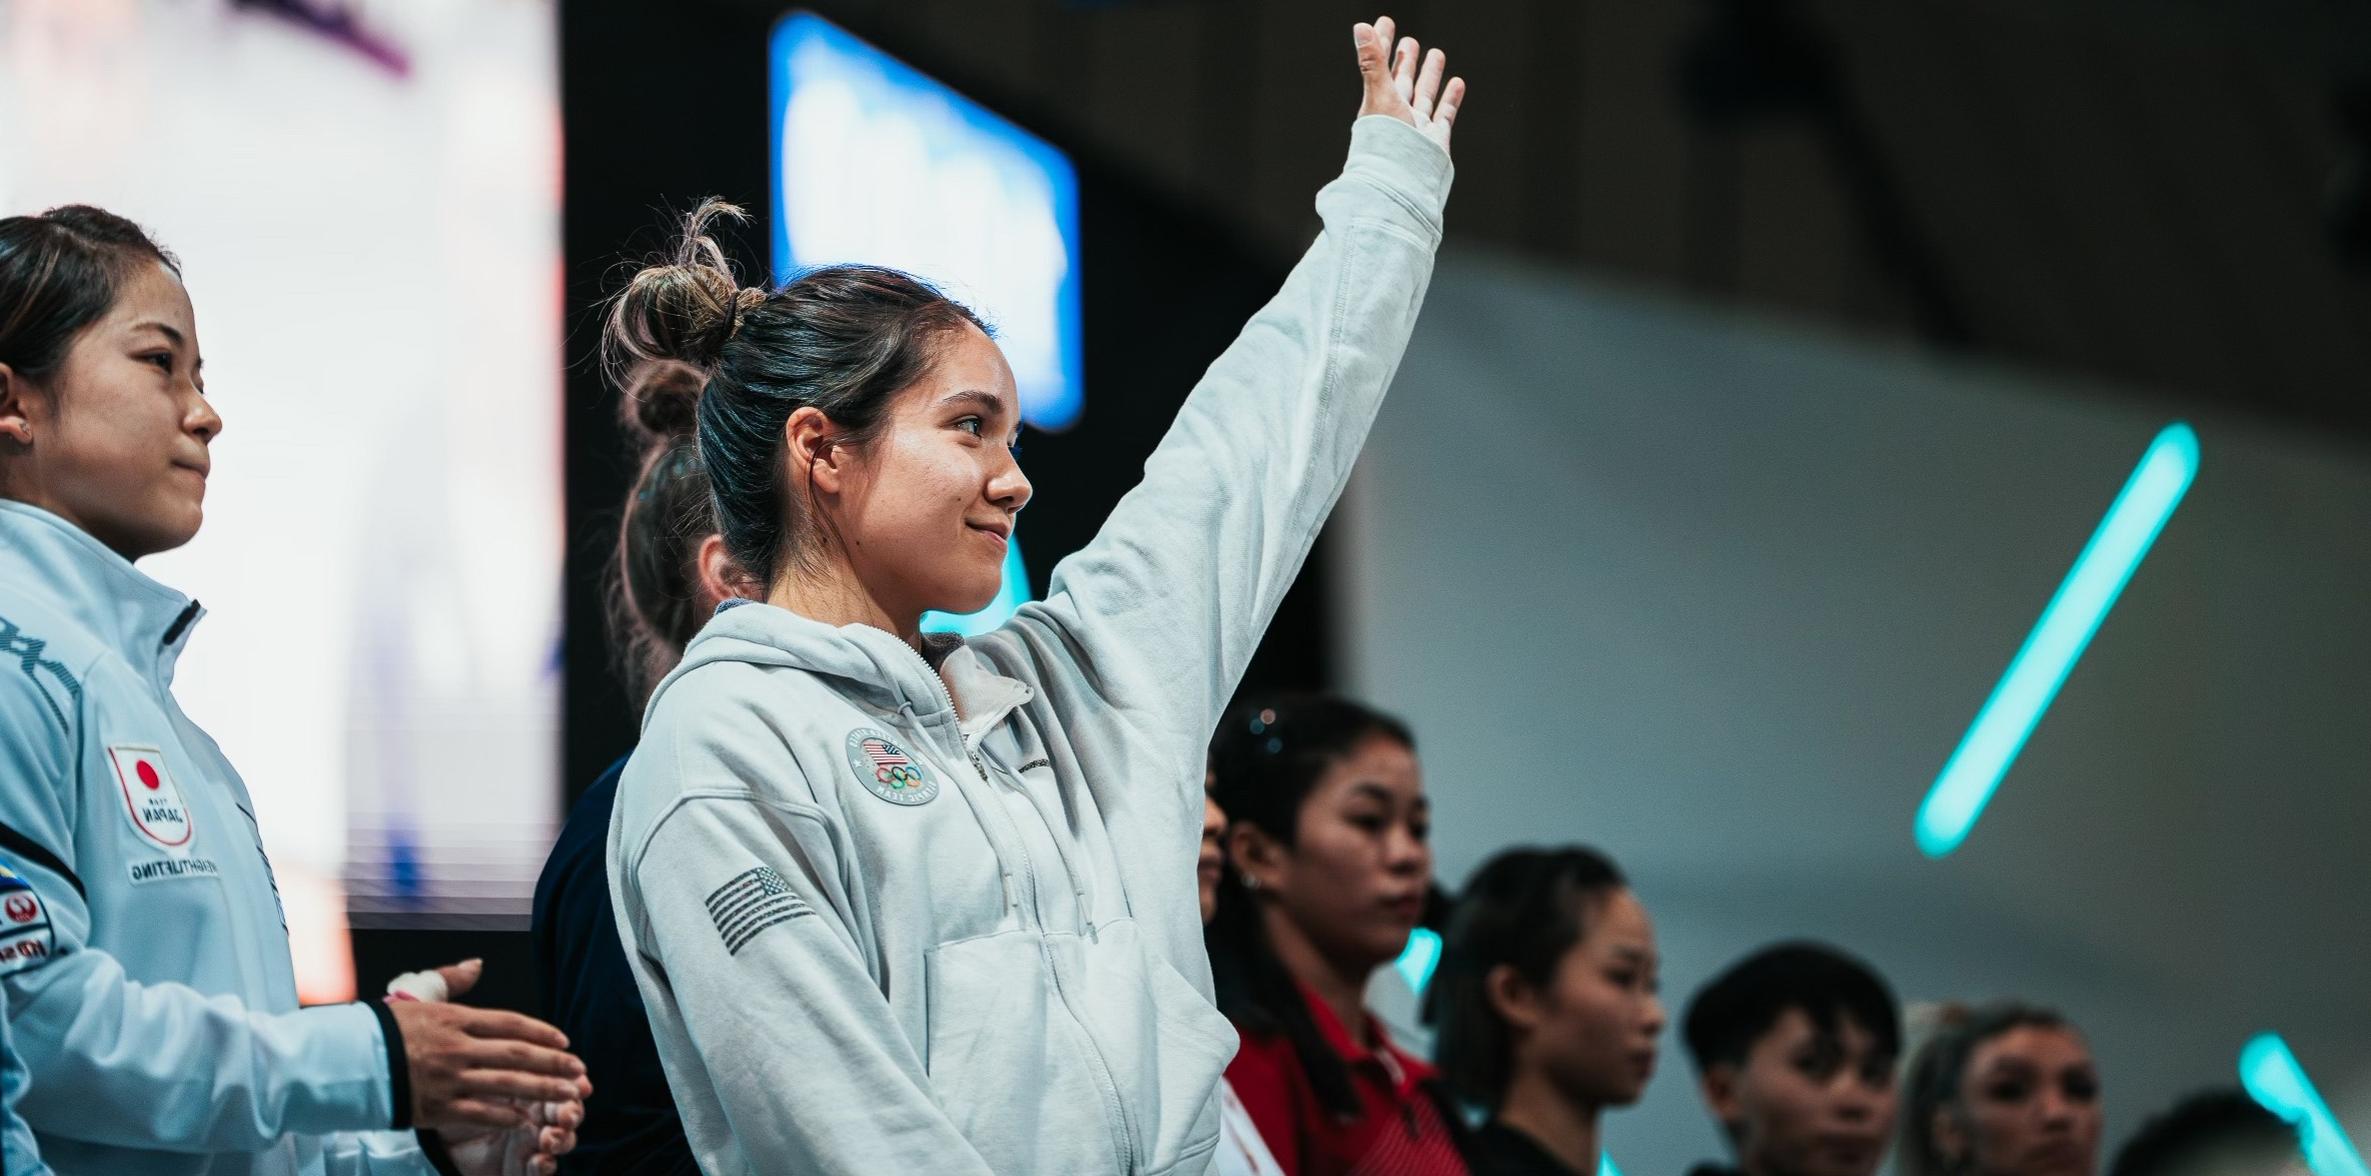 Jourdan Delacruz standing with her arm up waving